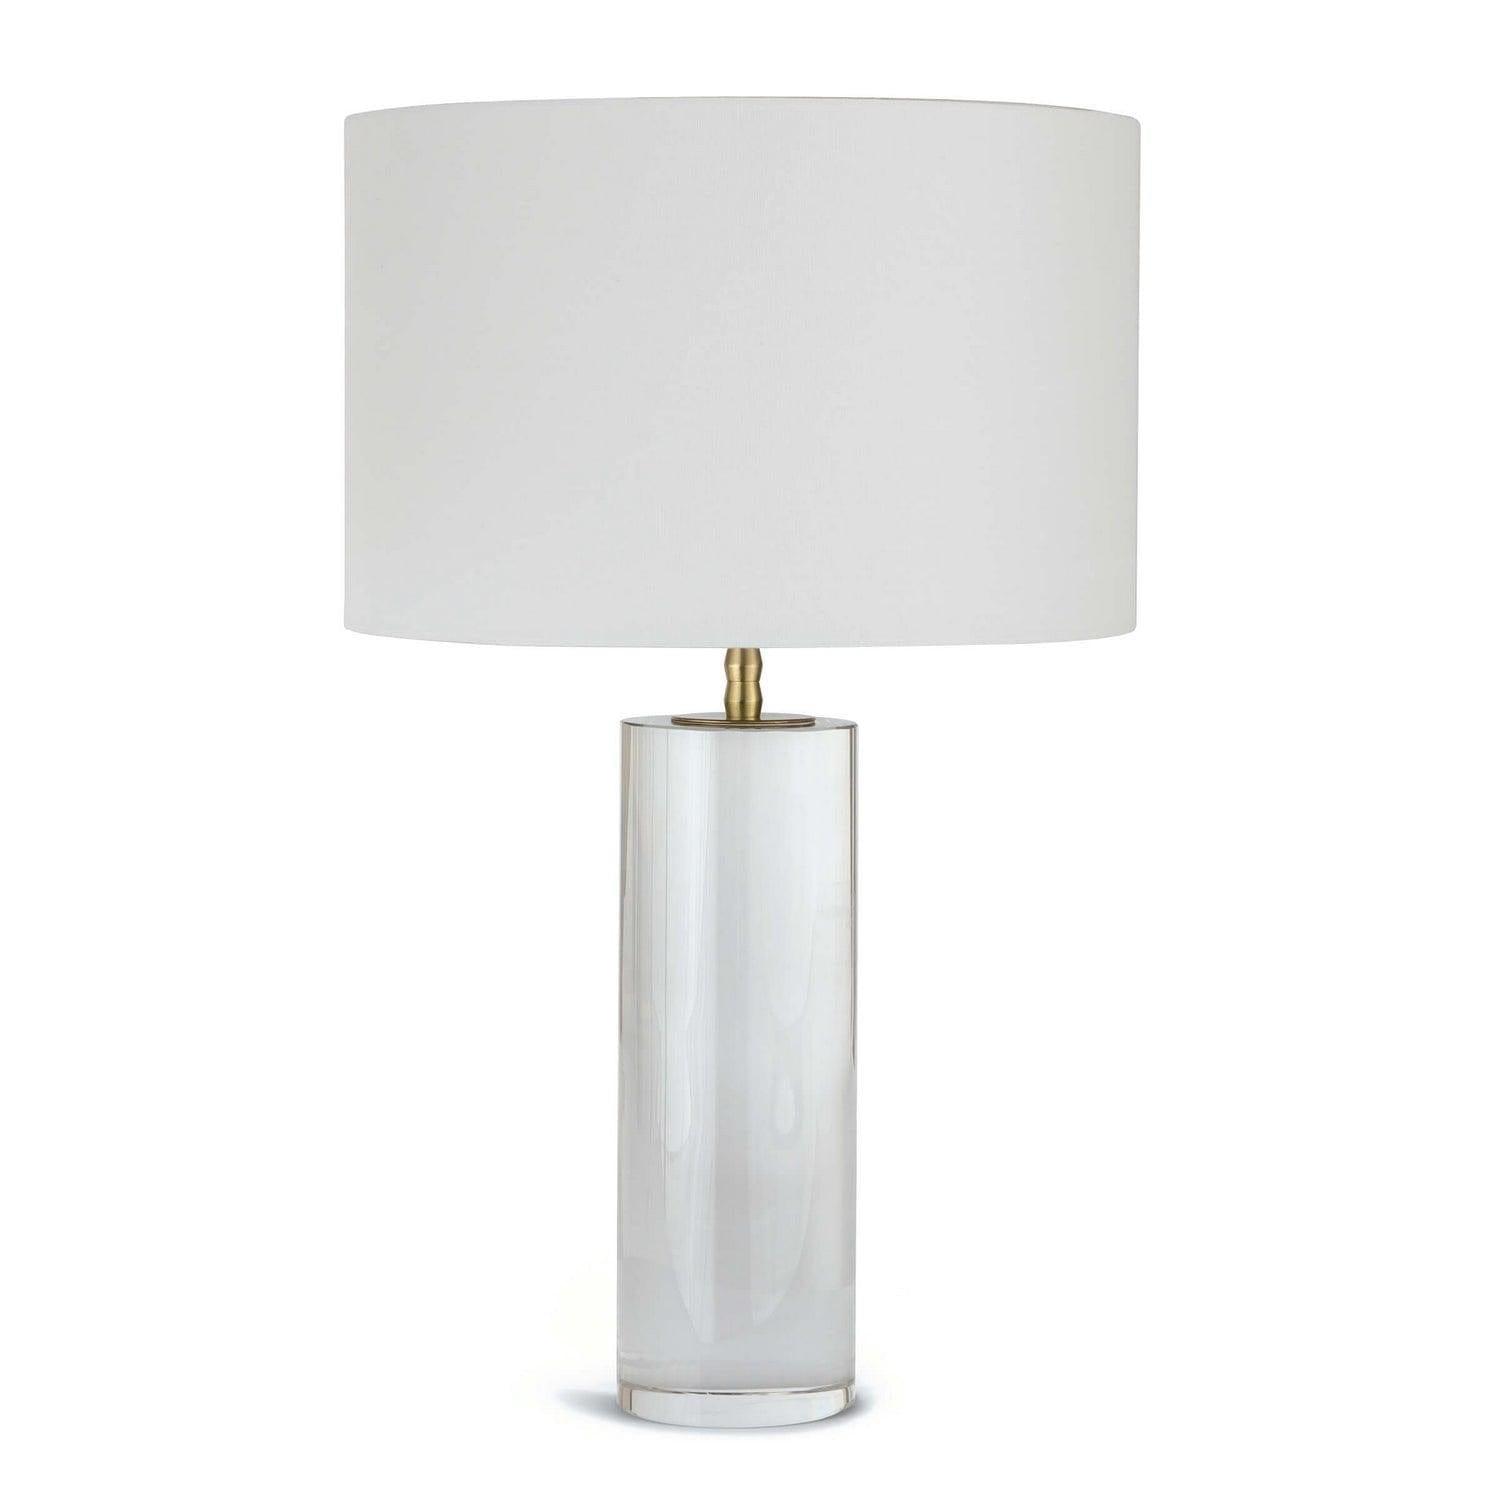 Regina Andrew - Juliet Table Lamp - 13-1283 | Montreal Lighting & Hardware